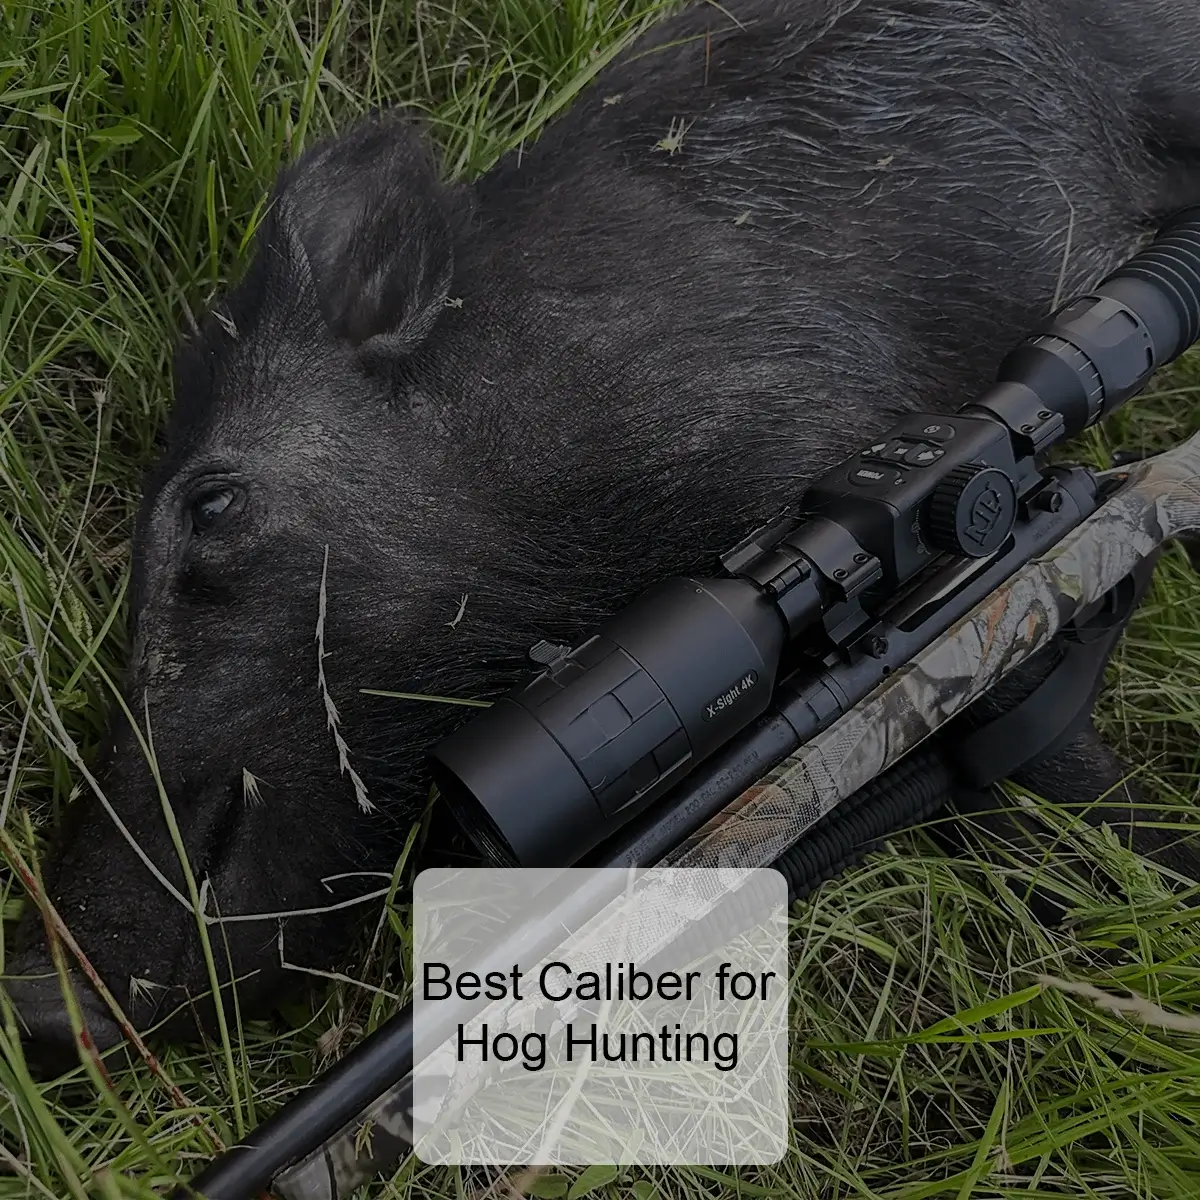 Best Caliber for Hog Hunting